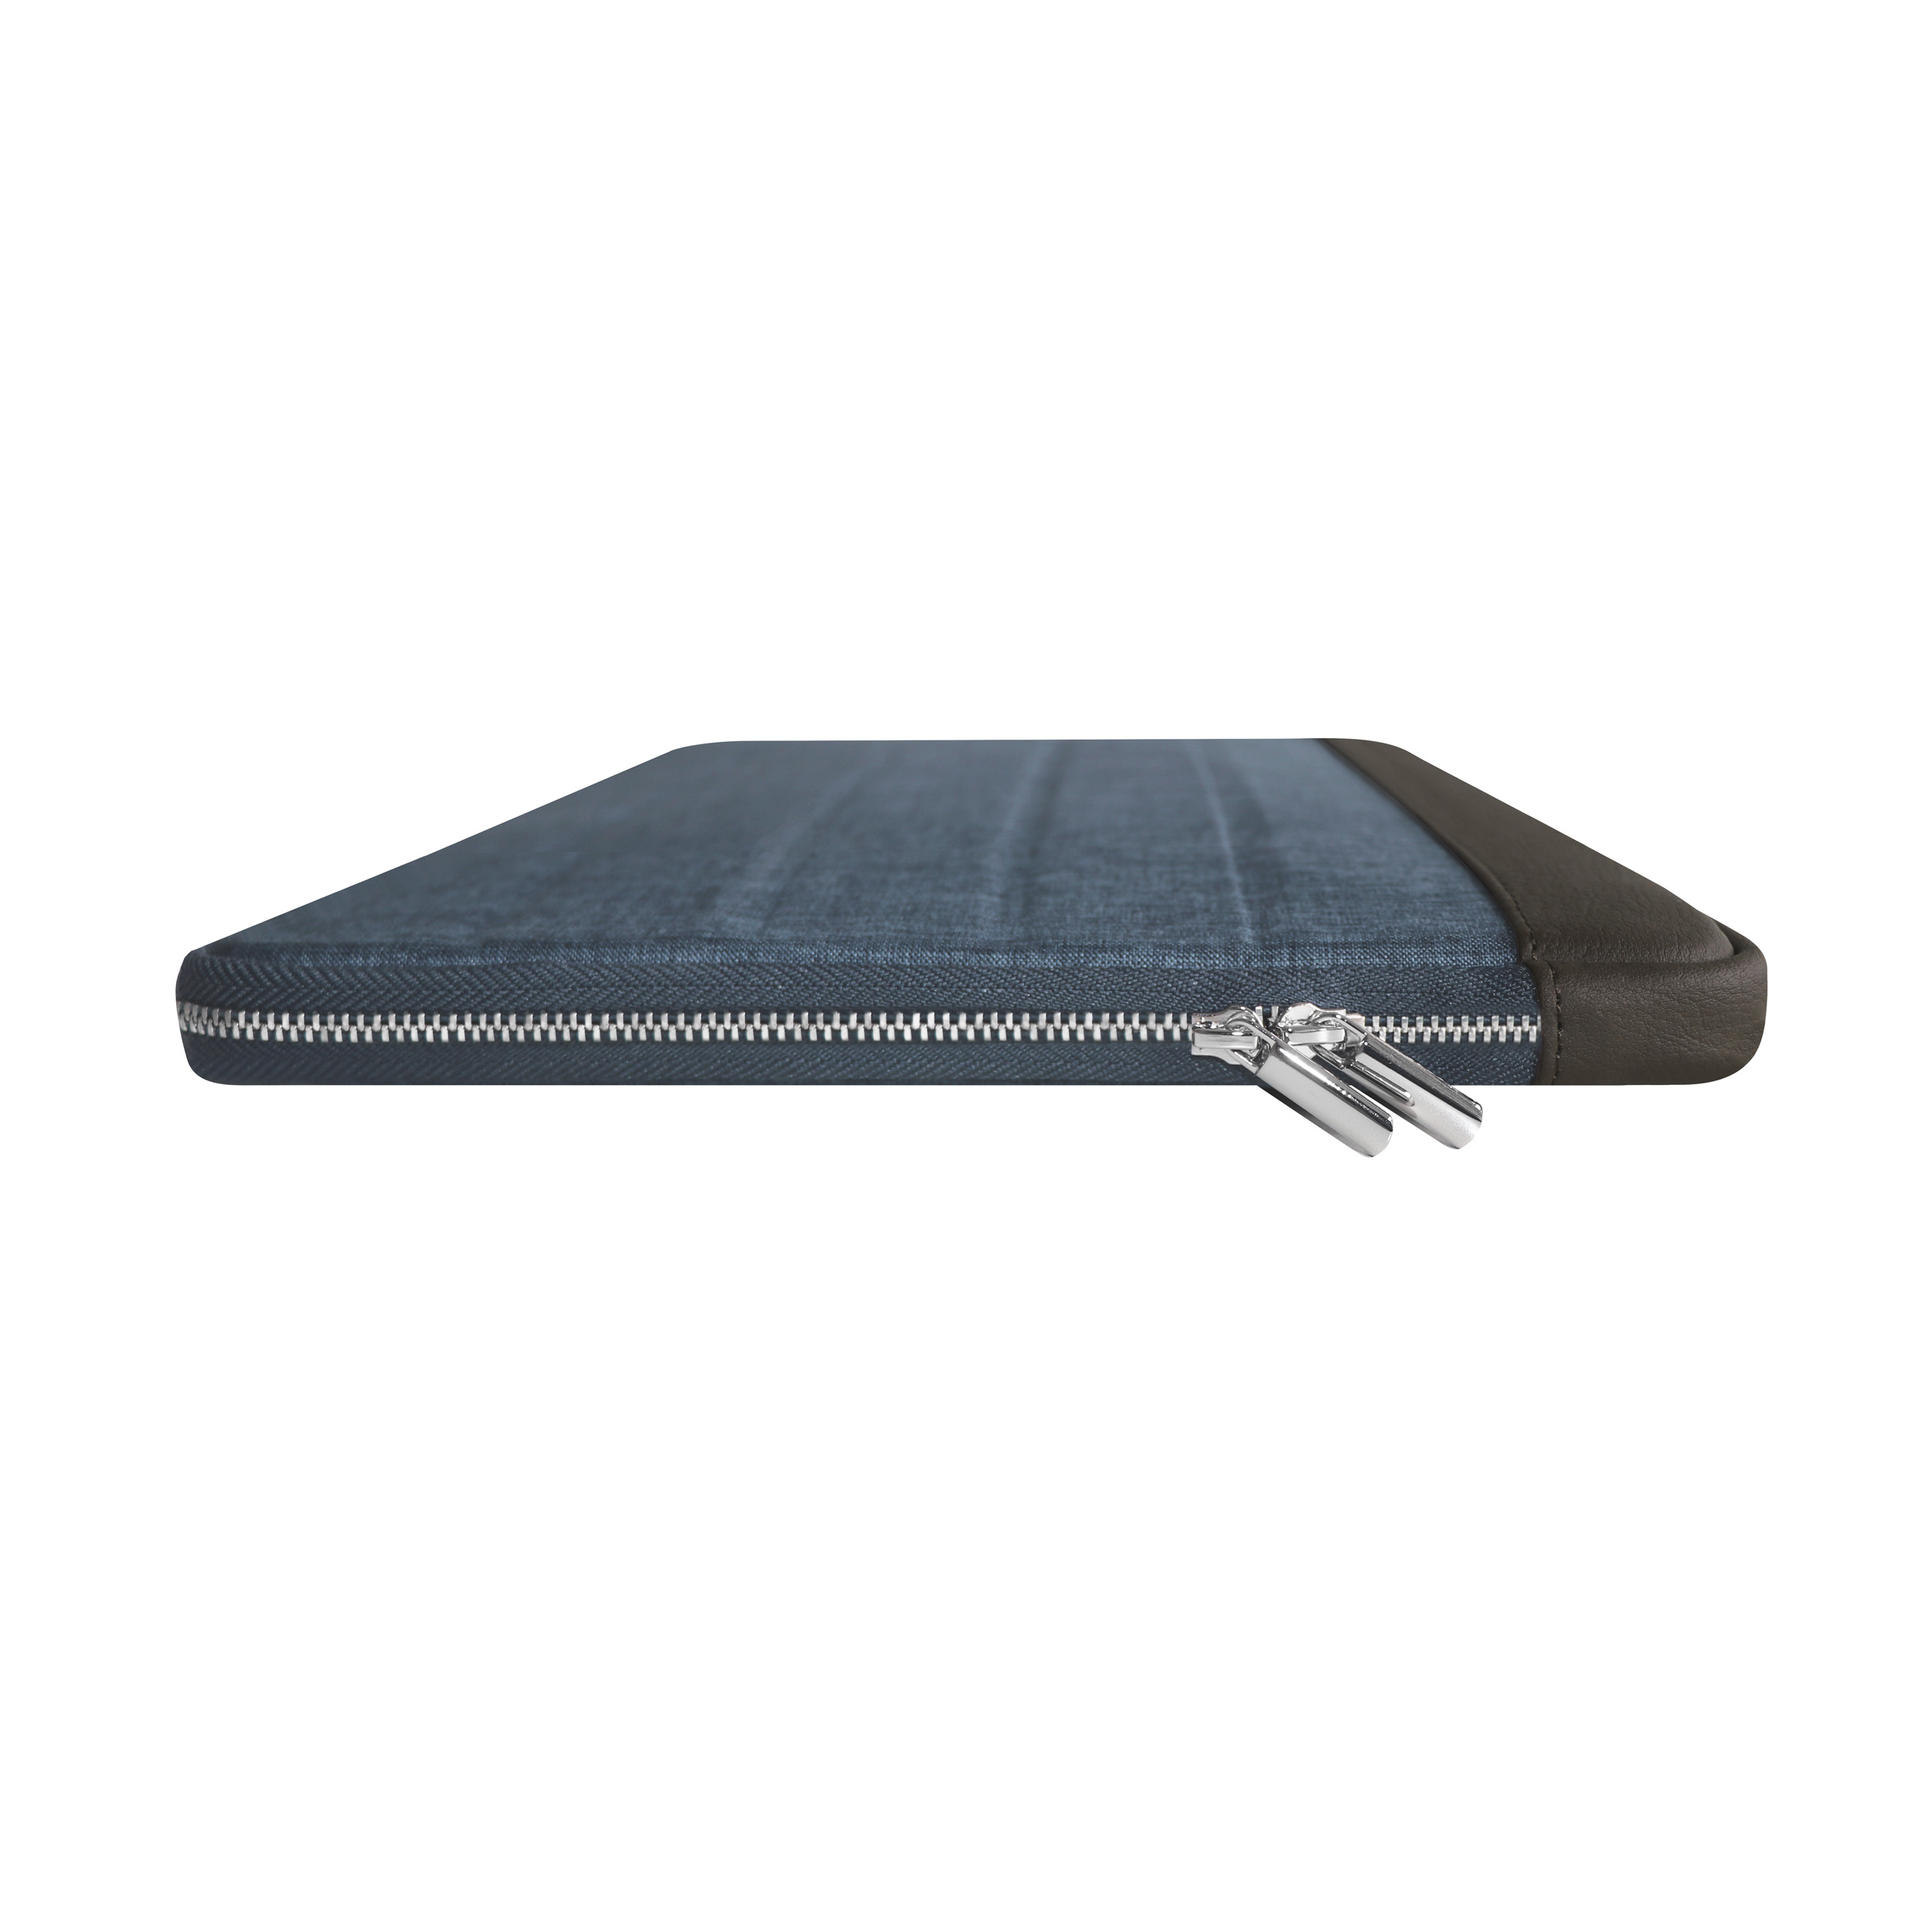 KMP Sleeve für MacBook Lederoptik, biobasiertes Notebook blue Pro für brown 13 Sleeve / Blue/Brown Apple Material Textil, in Sleeve